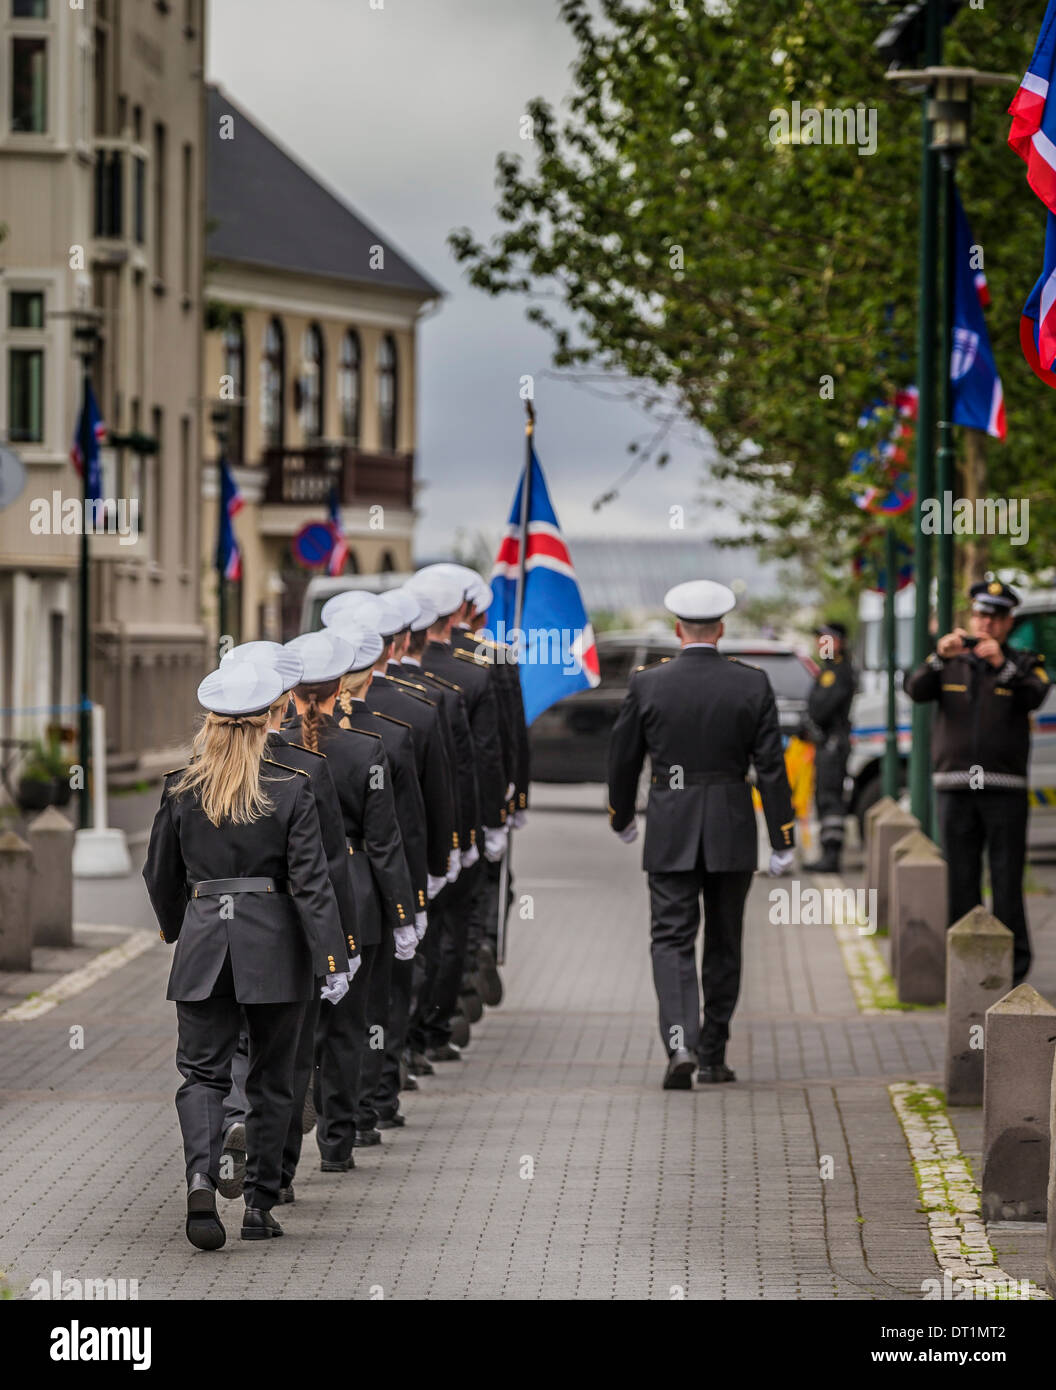 Parade le 17 juin, jour de l'indépendance de l'Islande. Reykjavik, Islande Banque D'Images